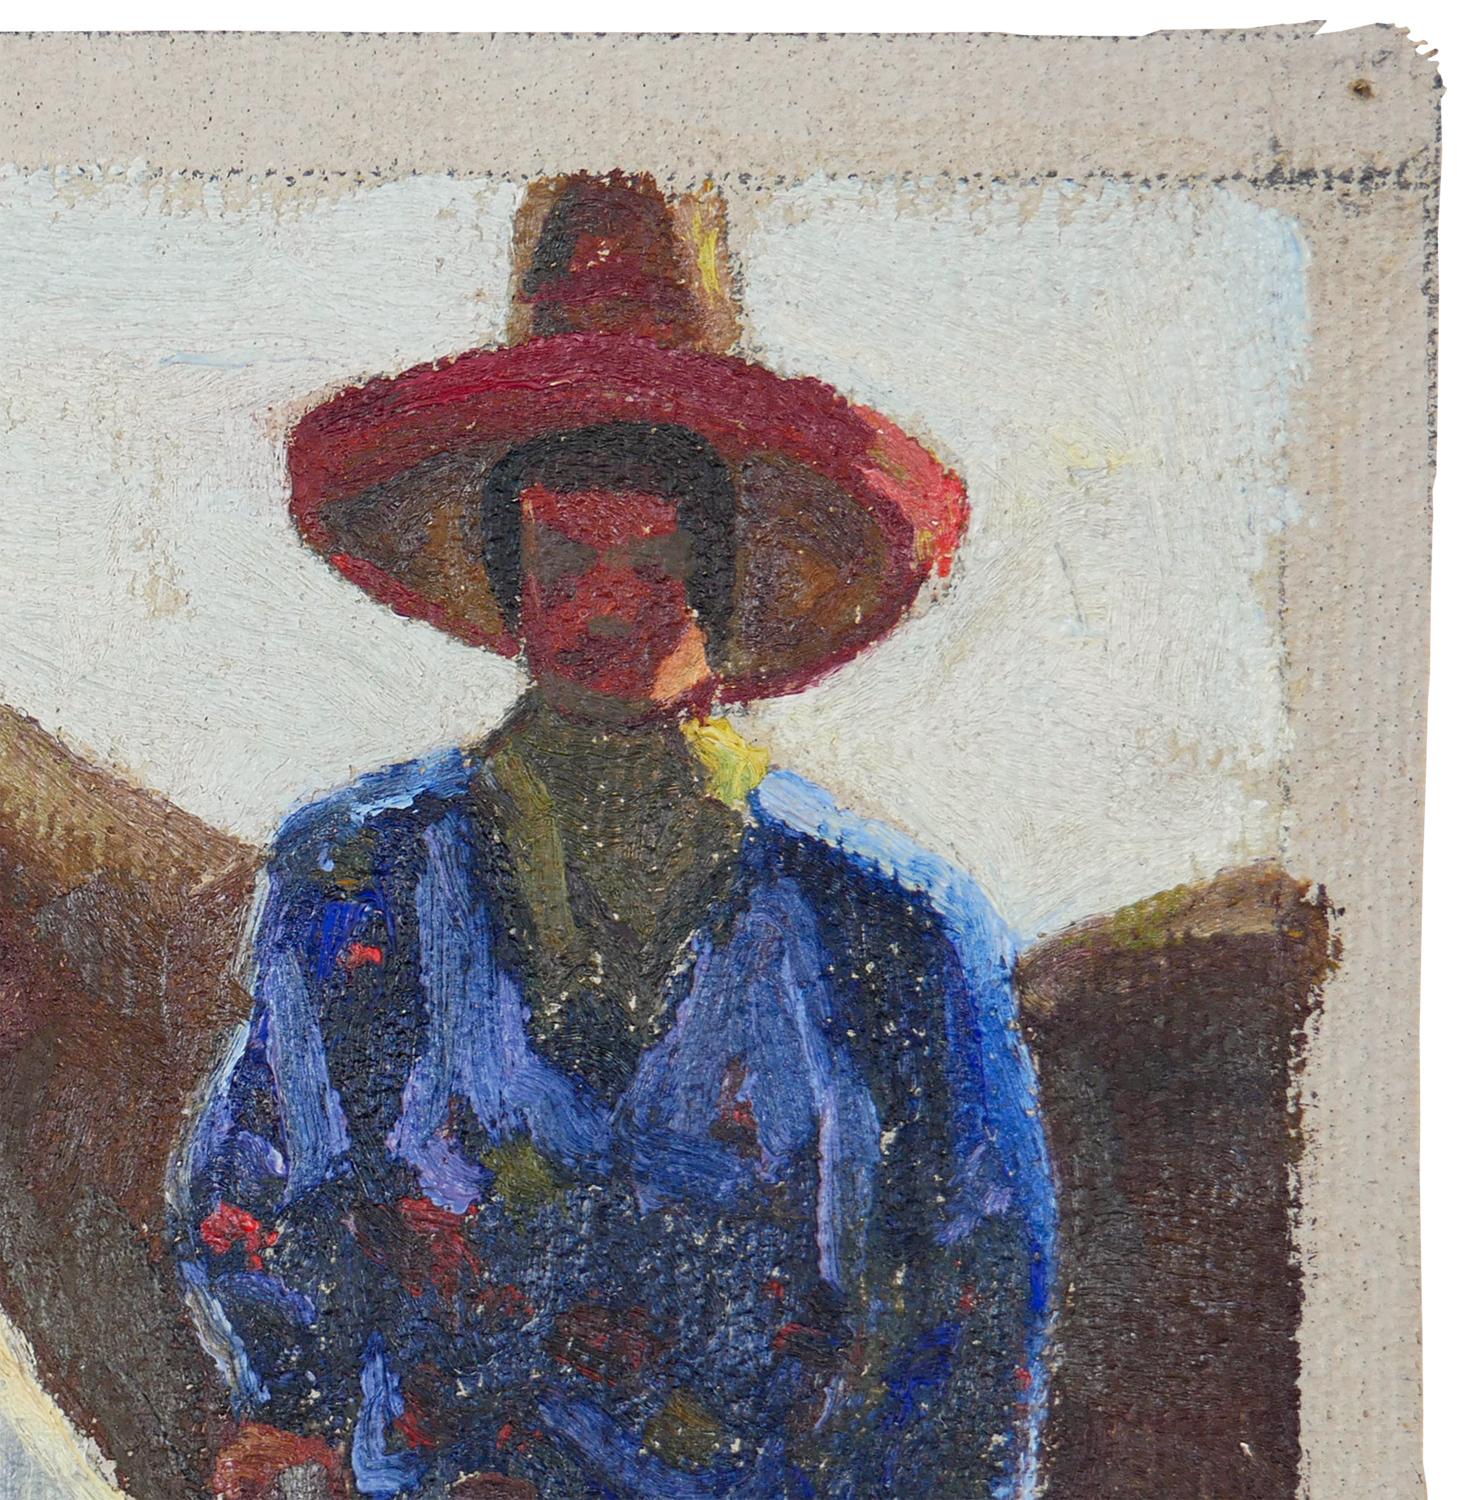 Peinture impressionniste abstraite bleue, rouge et brune de l'artiste texan Fred Darge. La peinture représente un cow-boy portant une chemise bleue et un chapeau rouge, assis sur un cheval marron. Signé par l'artiste dans le coin inférieur droit.